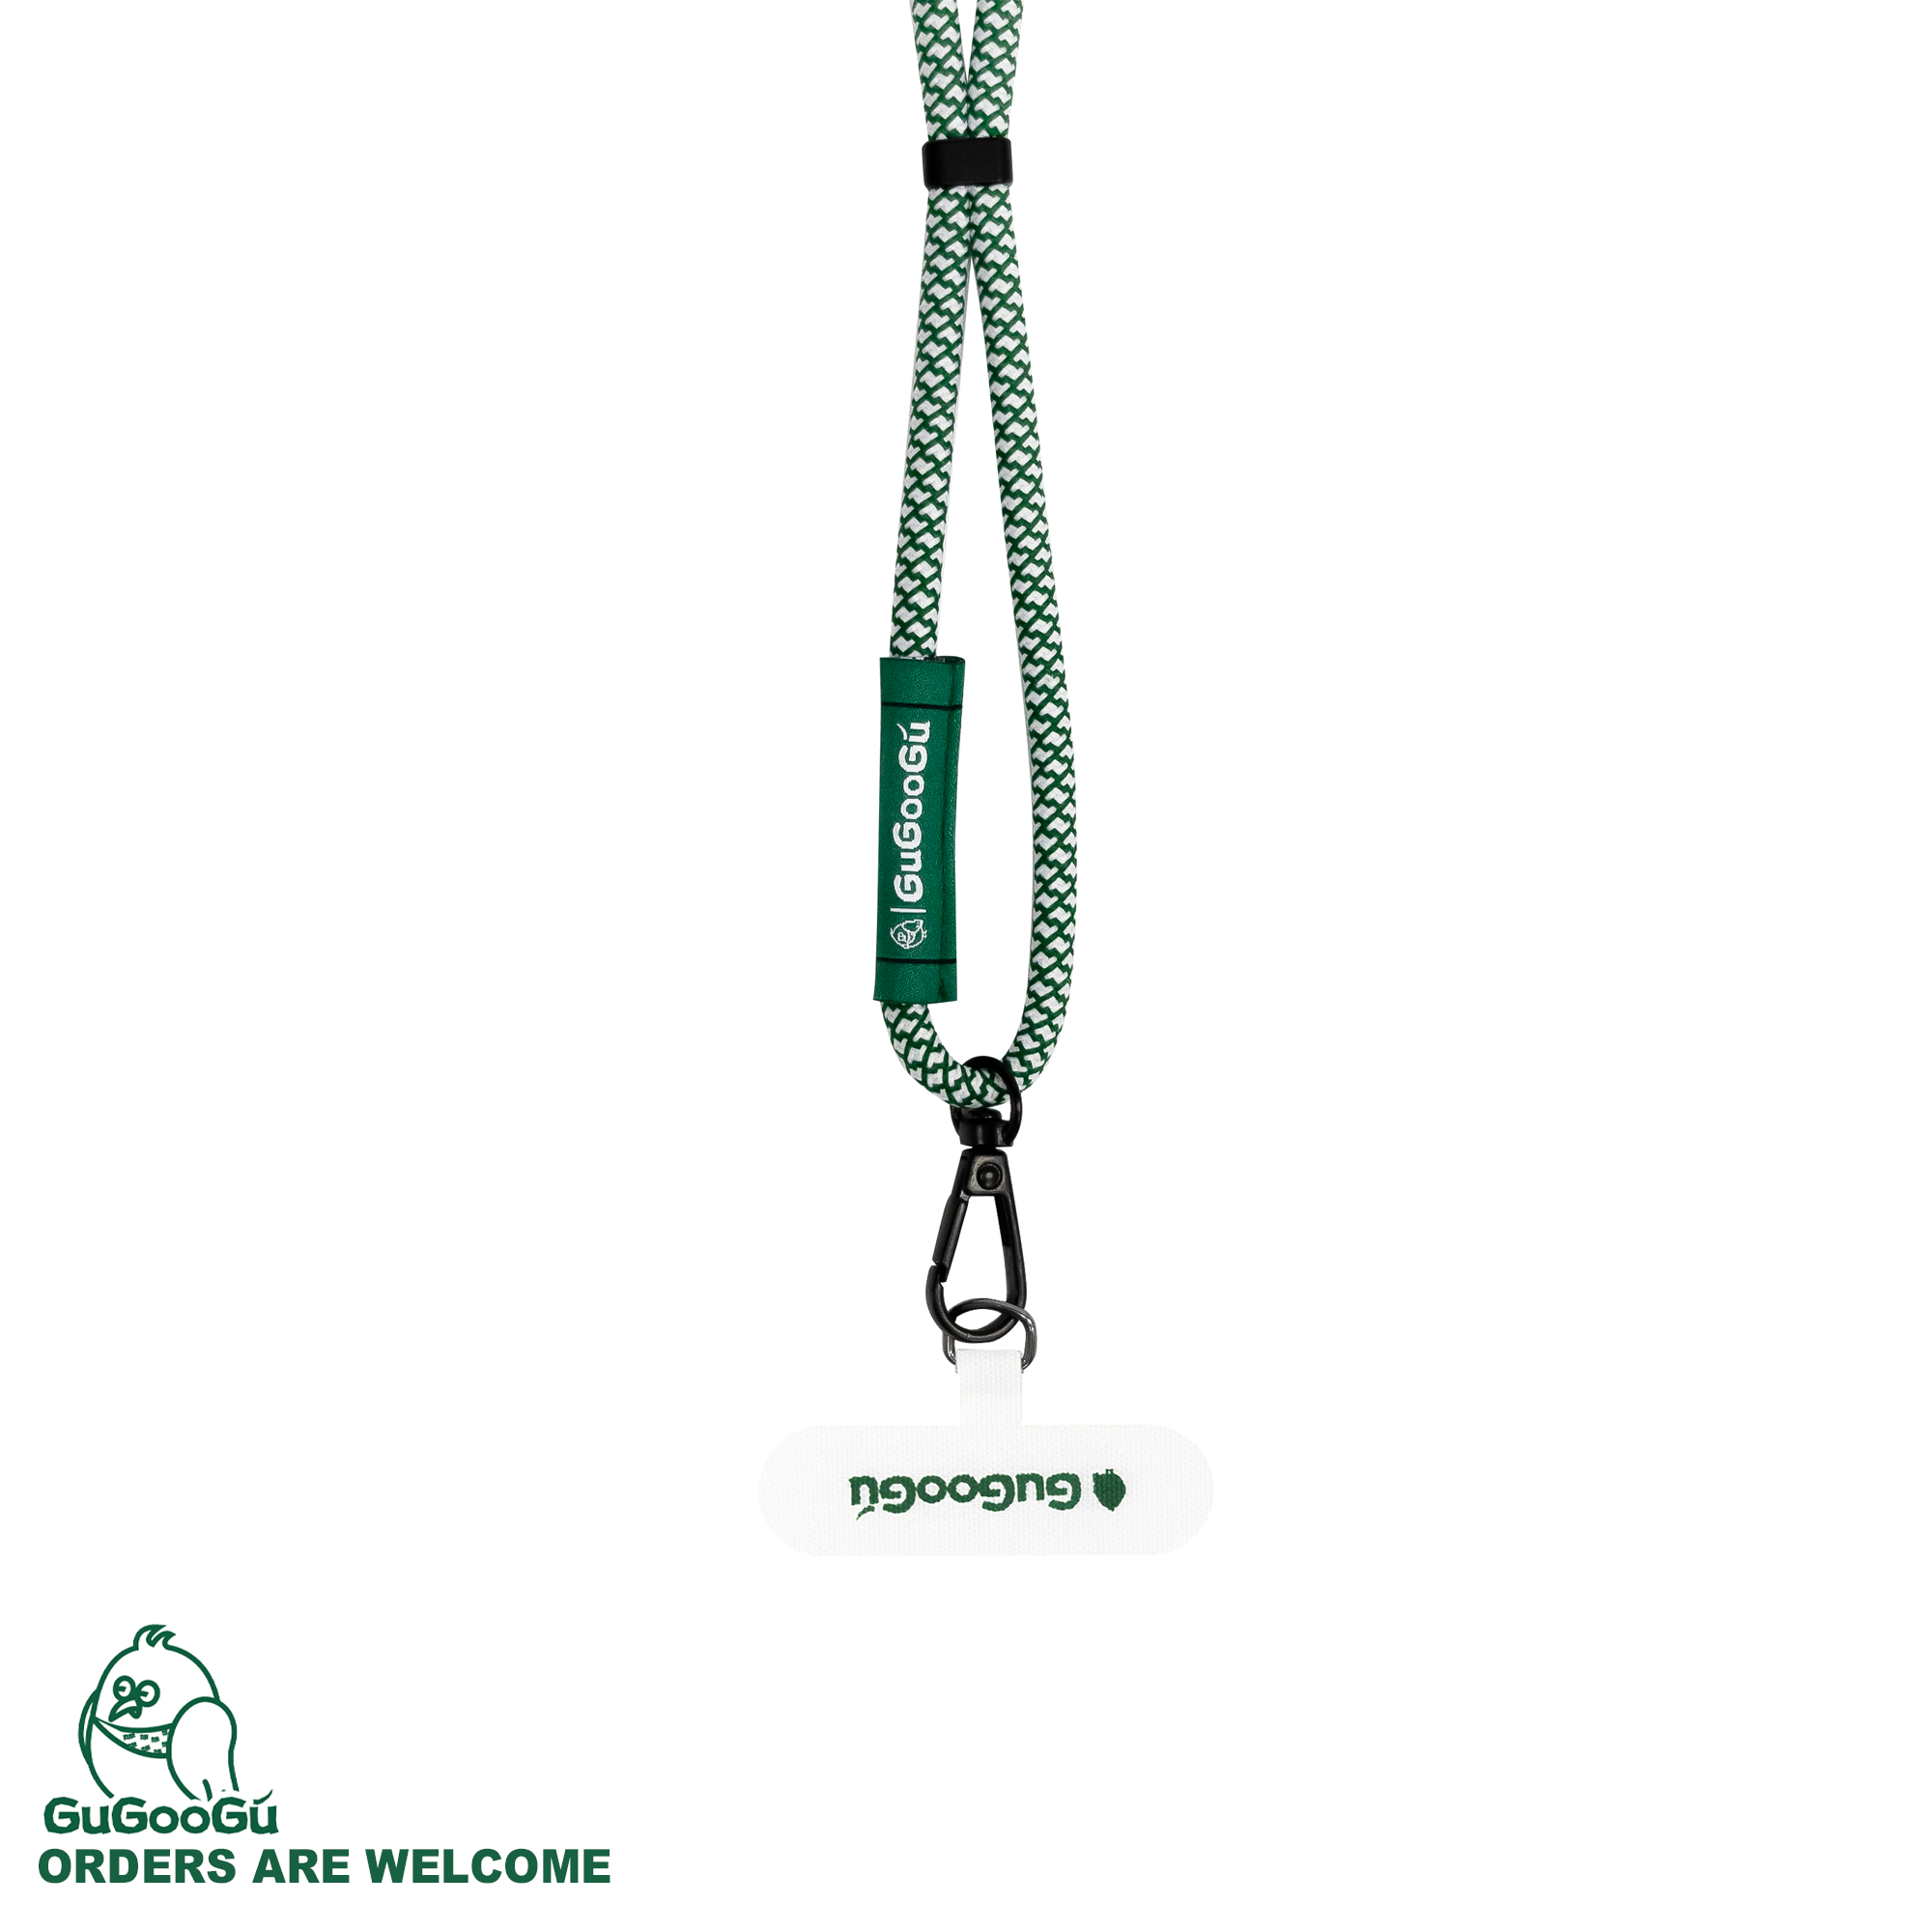 這是GUGOOGU的手機繩套裝，包含了一條綠白拼色的手機掛繩，和一個白色的手機夾片。